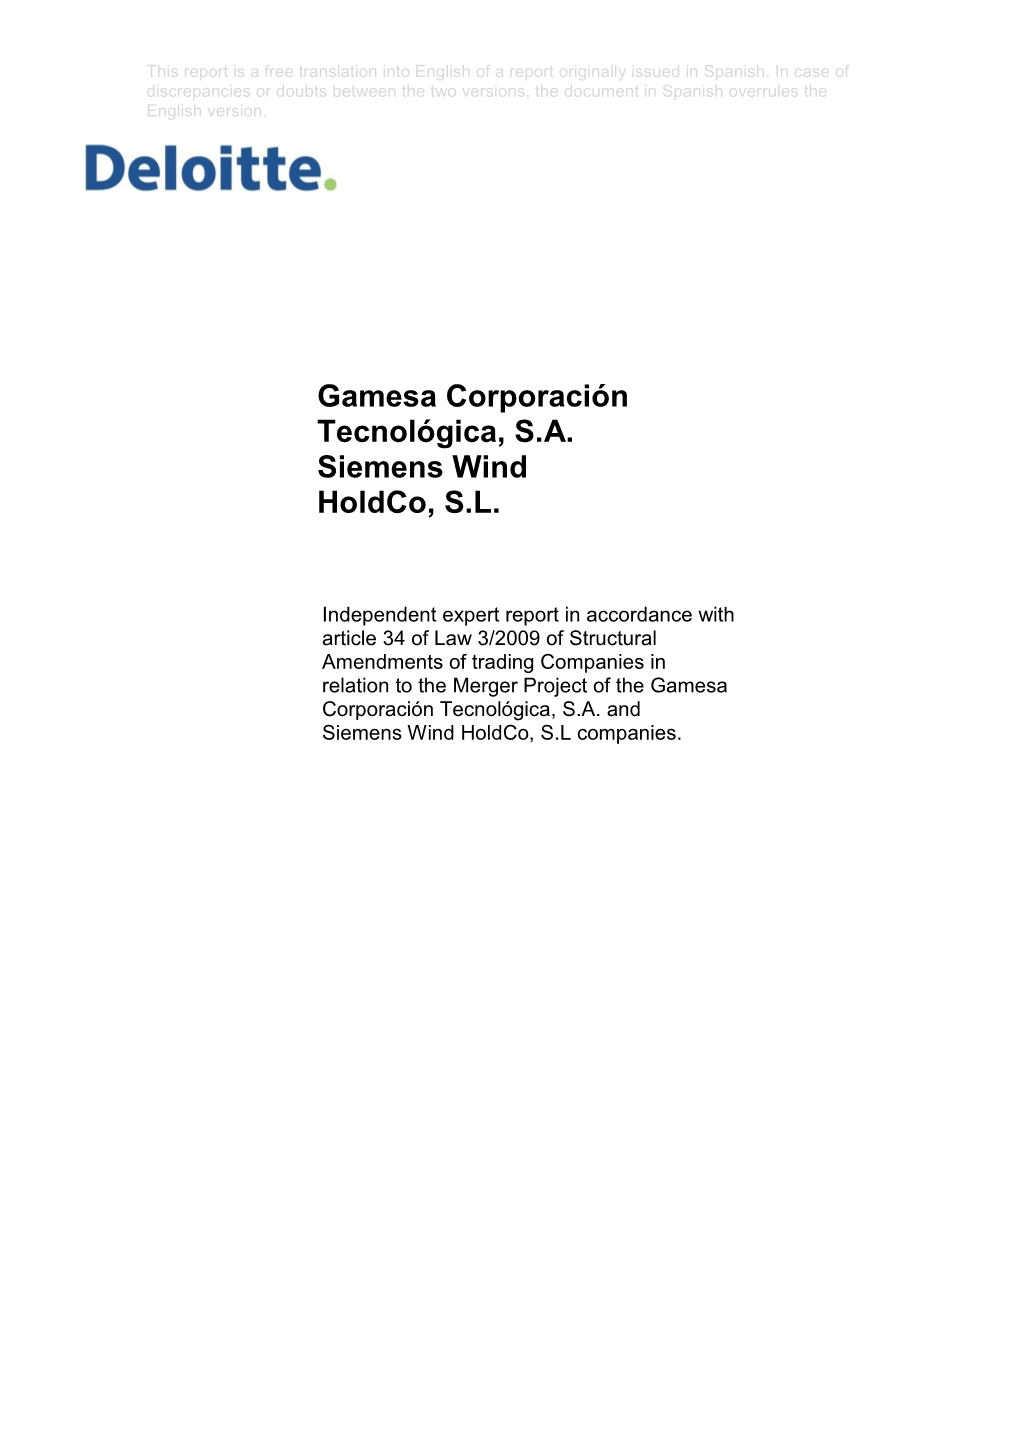 Gamesa Corporación Tecnológica, S.A. Siemens Wind Holdco, S.L